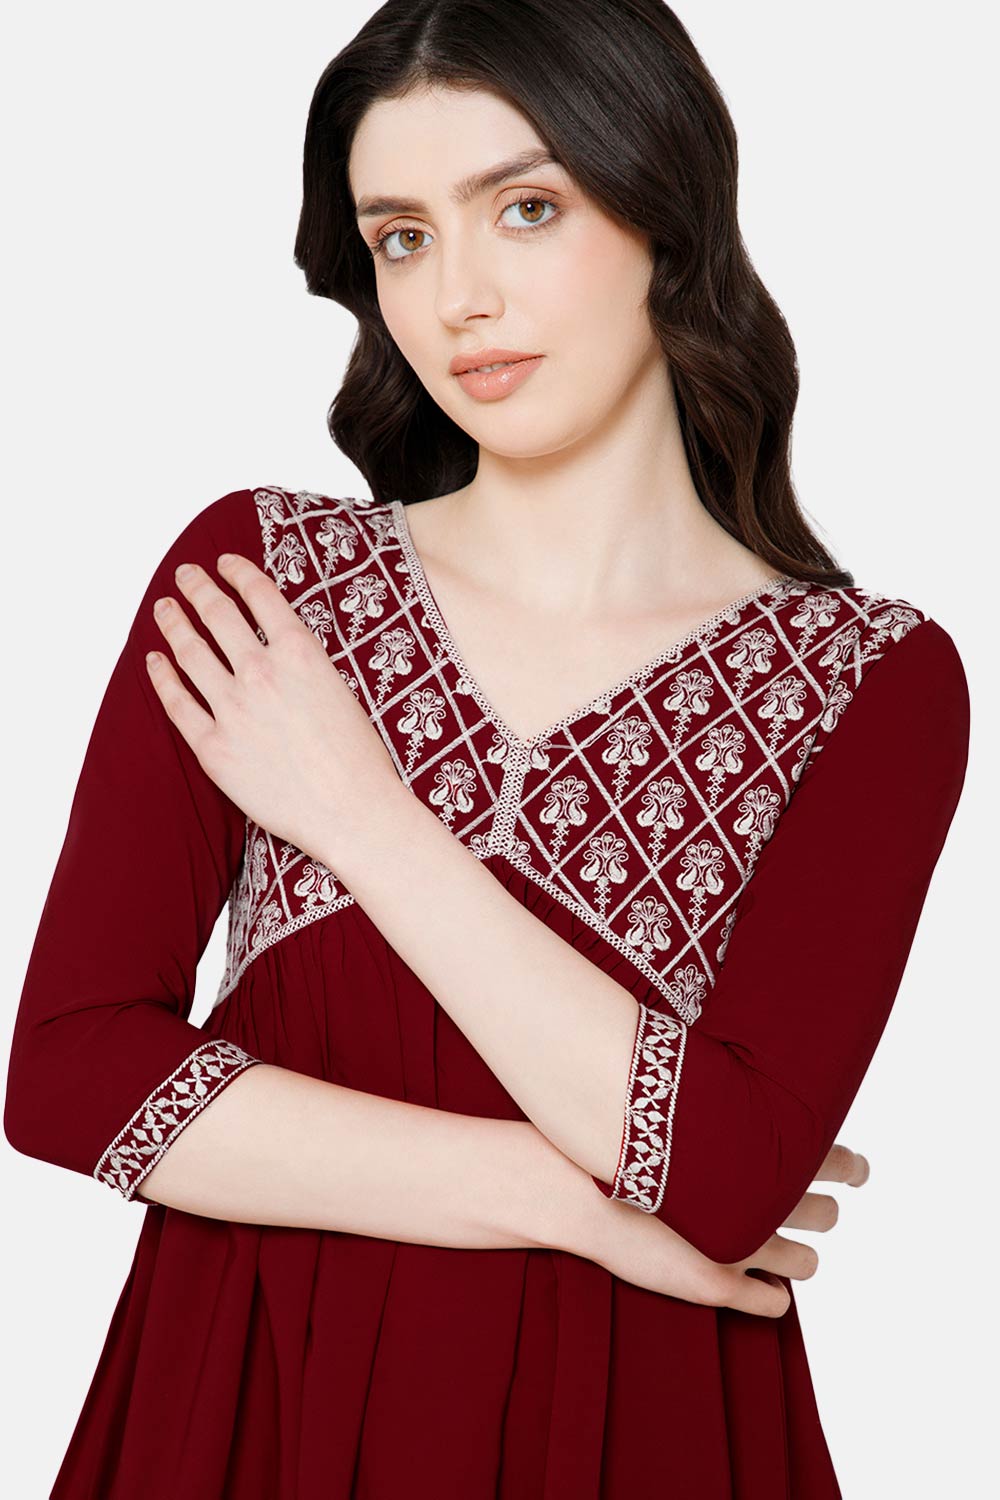 Mythri Women's Ethnic wear Kurthi with Elaborately Embroidered Front Yoke Design - Red - E070